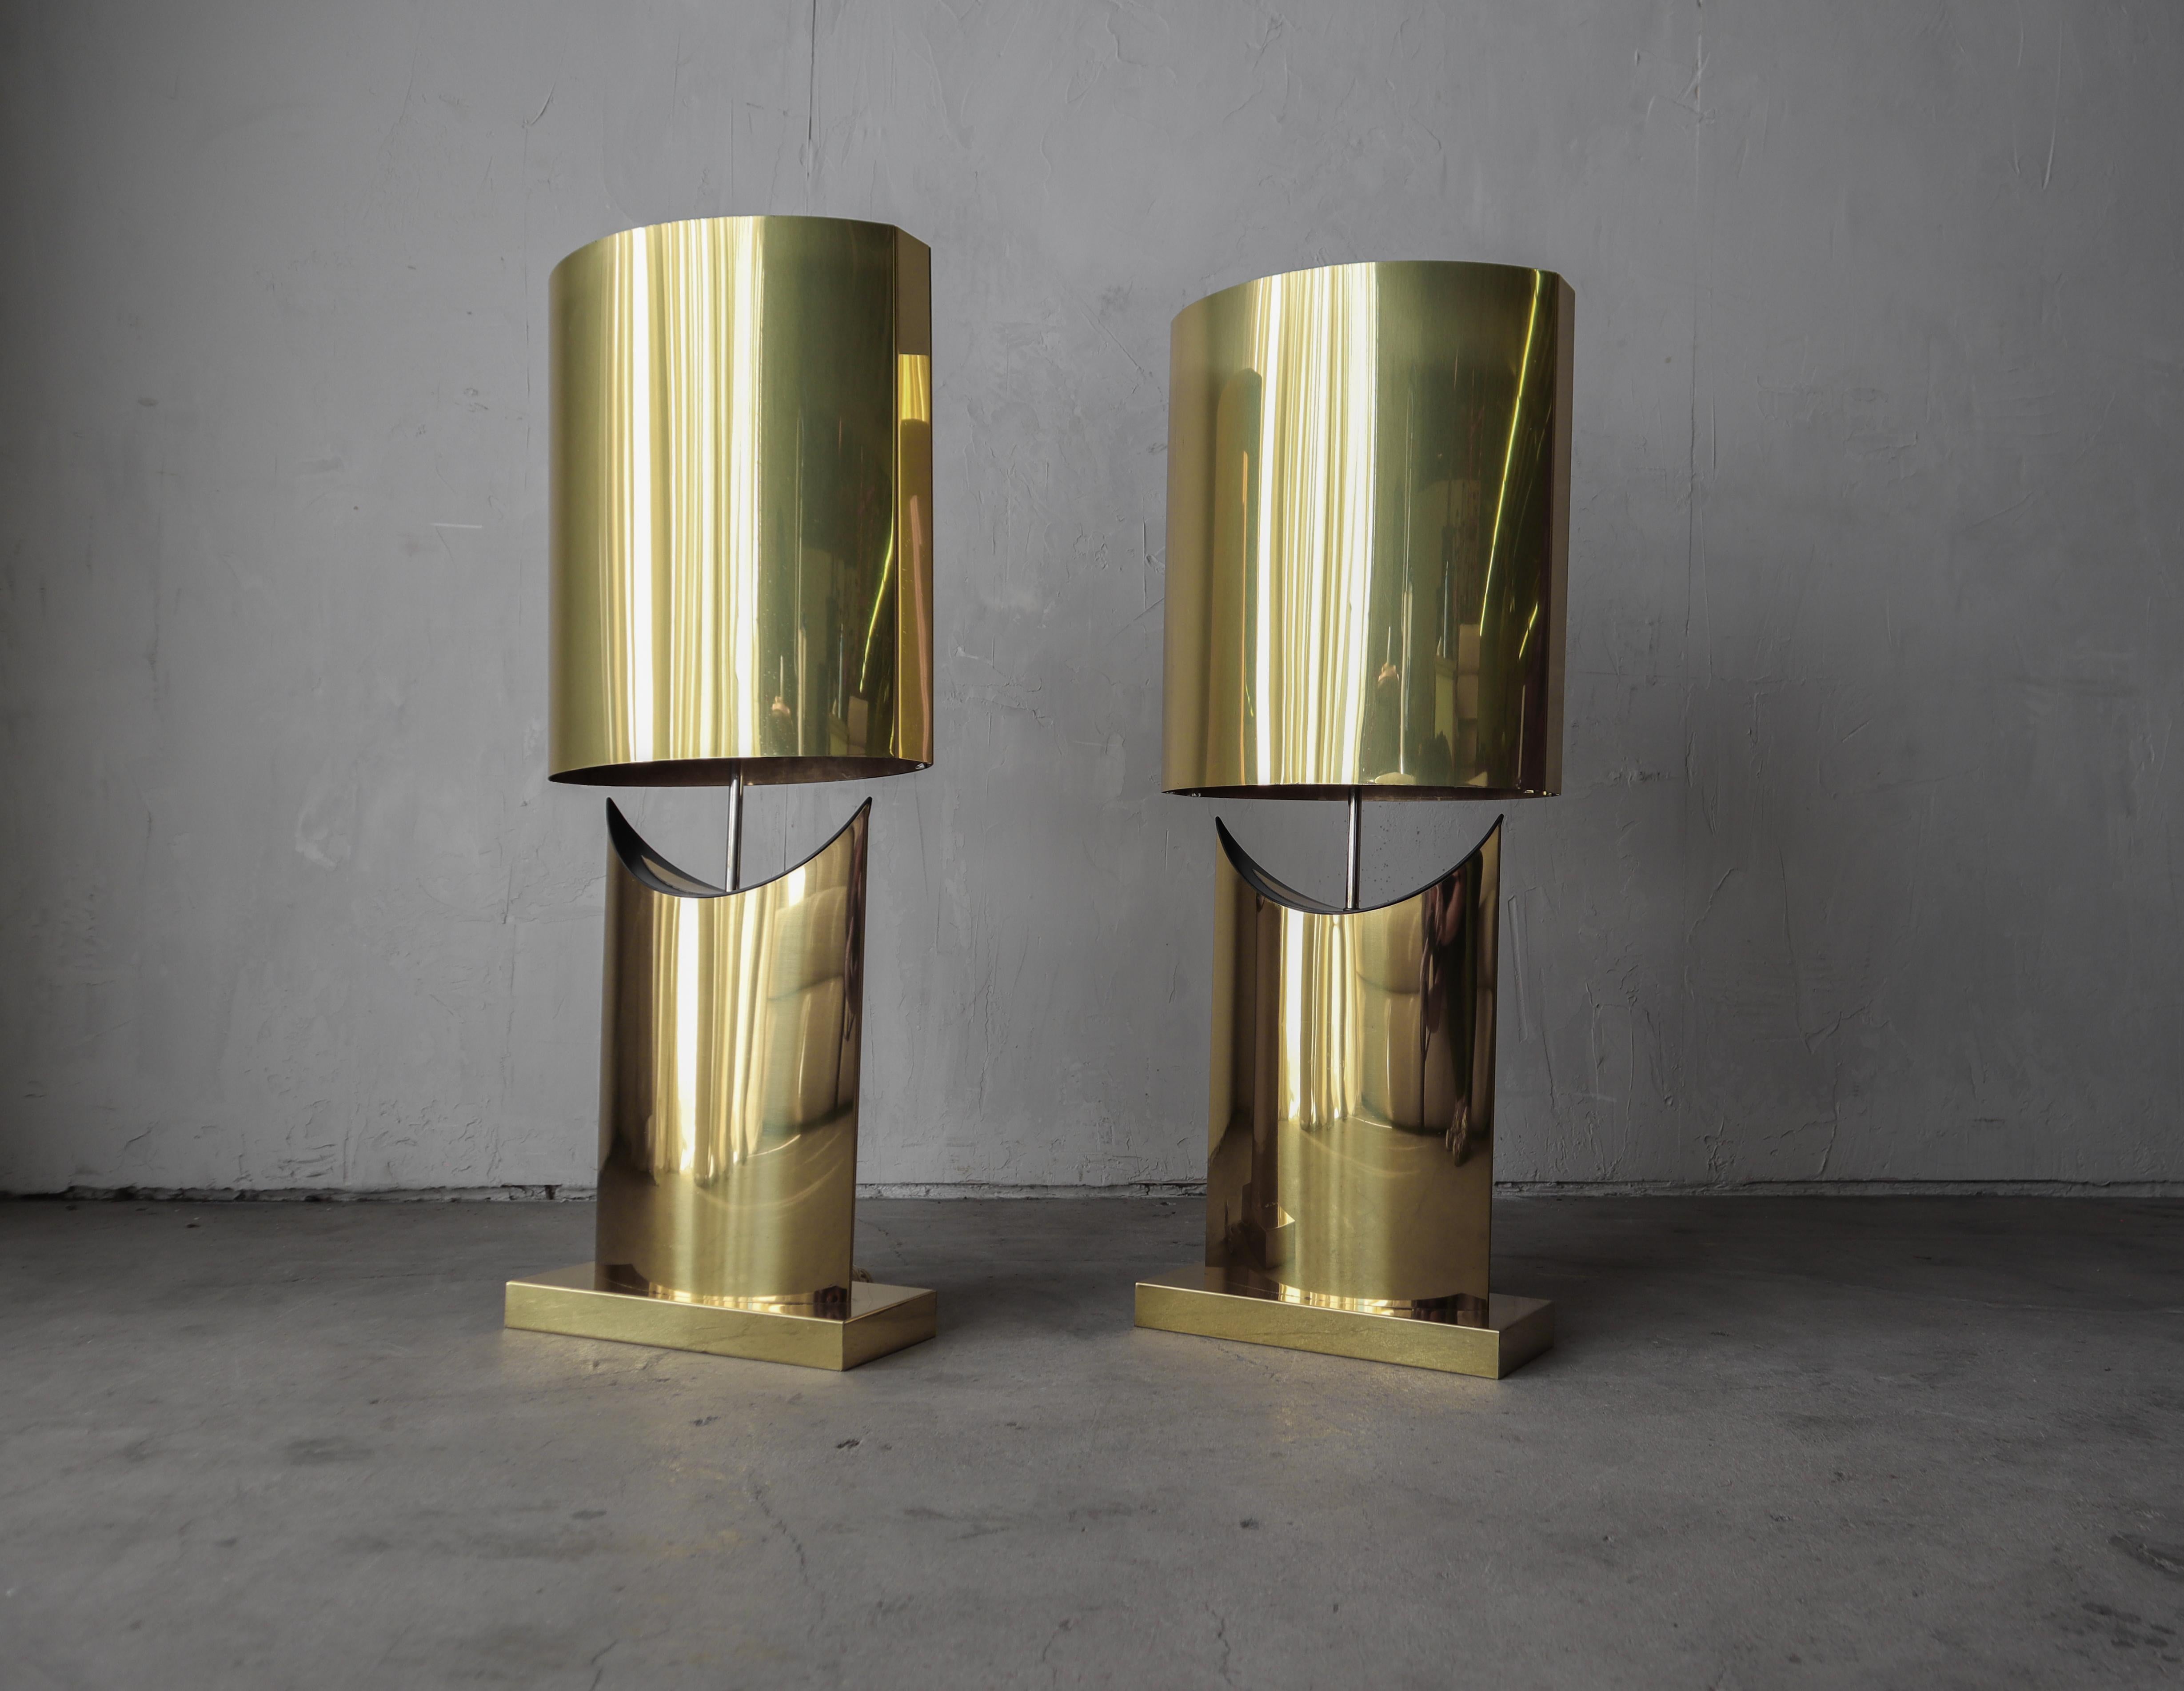 Absolut atemberaubendes und sehr großes Paar Messing-Tischlampen von Curtis Jere.  Mit ihrer skulpturalen Form und der warmen Messingfarbe ziehen diese Lampen die Blicke auf sich, die sowohl der Form als auch der Funktion dienen.

Die Lampen sind